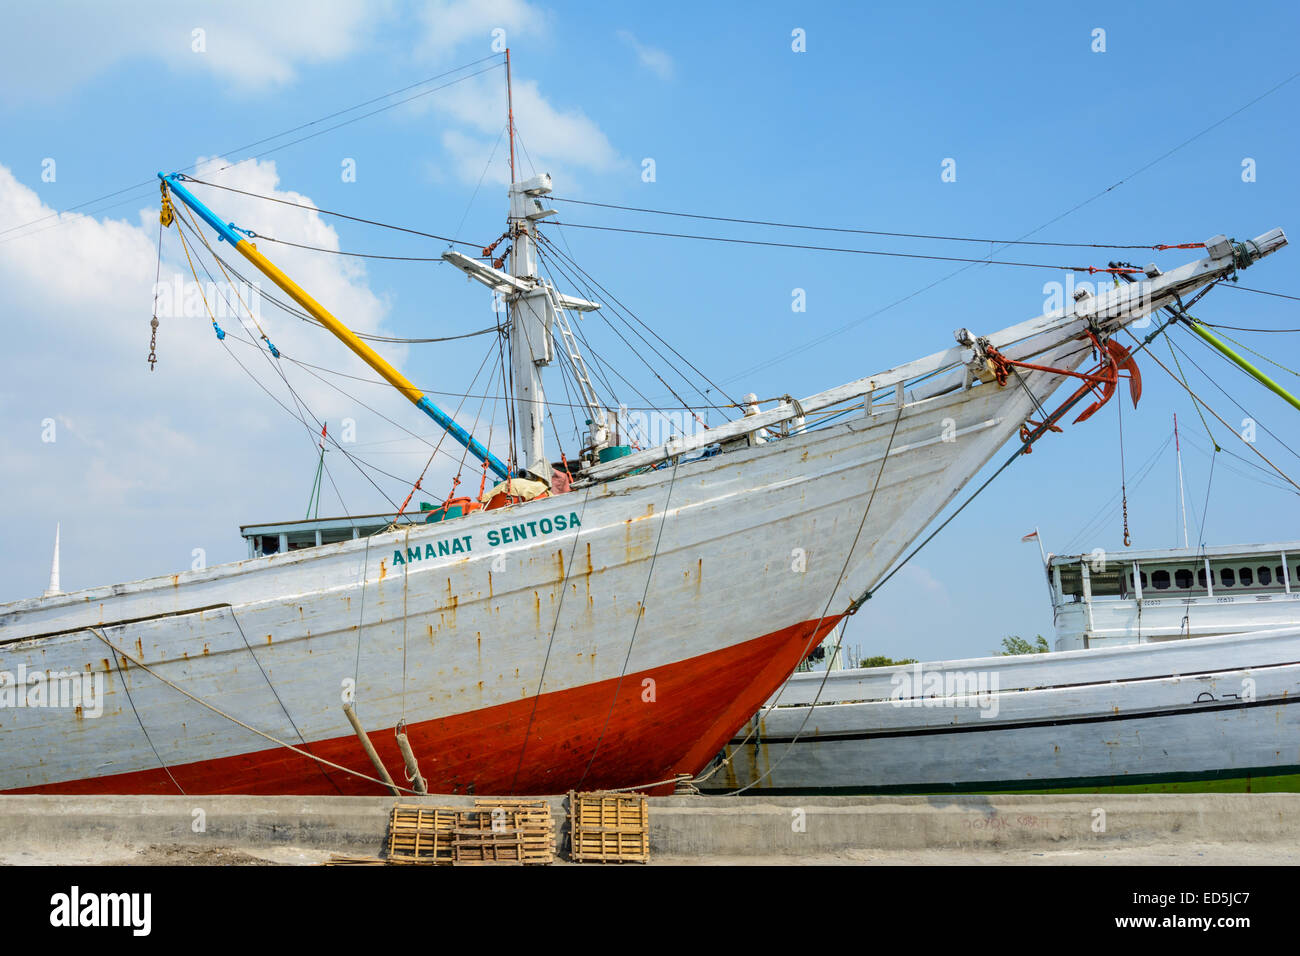 Pinsi des navires dans le vieux port de Sunda Kelapa, au nord de Jakarta, Indonésie Banque D'Images